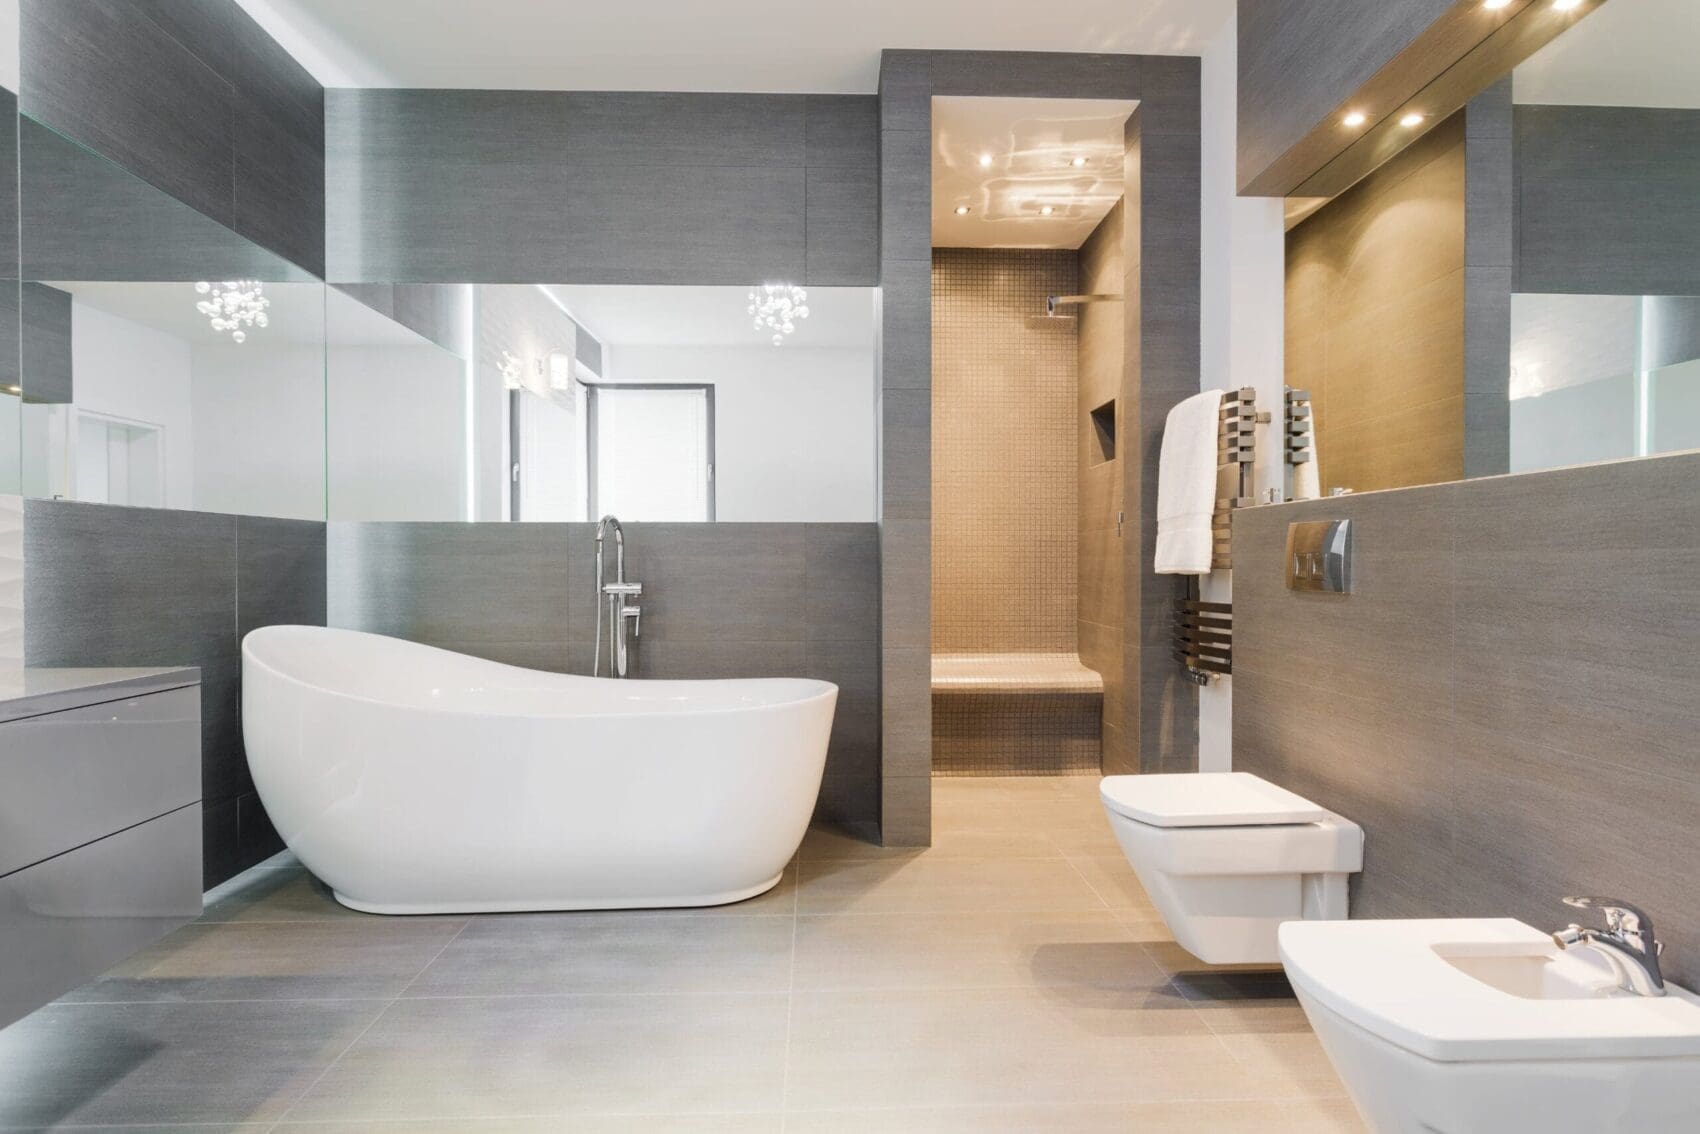 grote badkamer spiegel met verwarming 2 scaled badkamer elektrisch verwarmen elektrisch badkamer verwarming